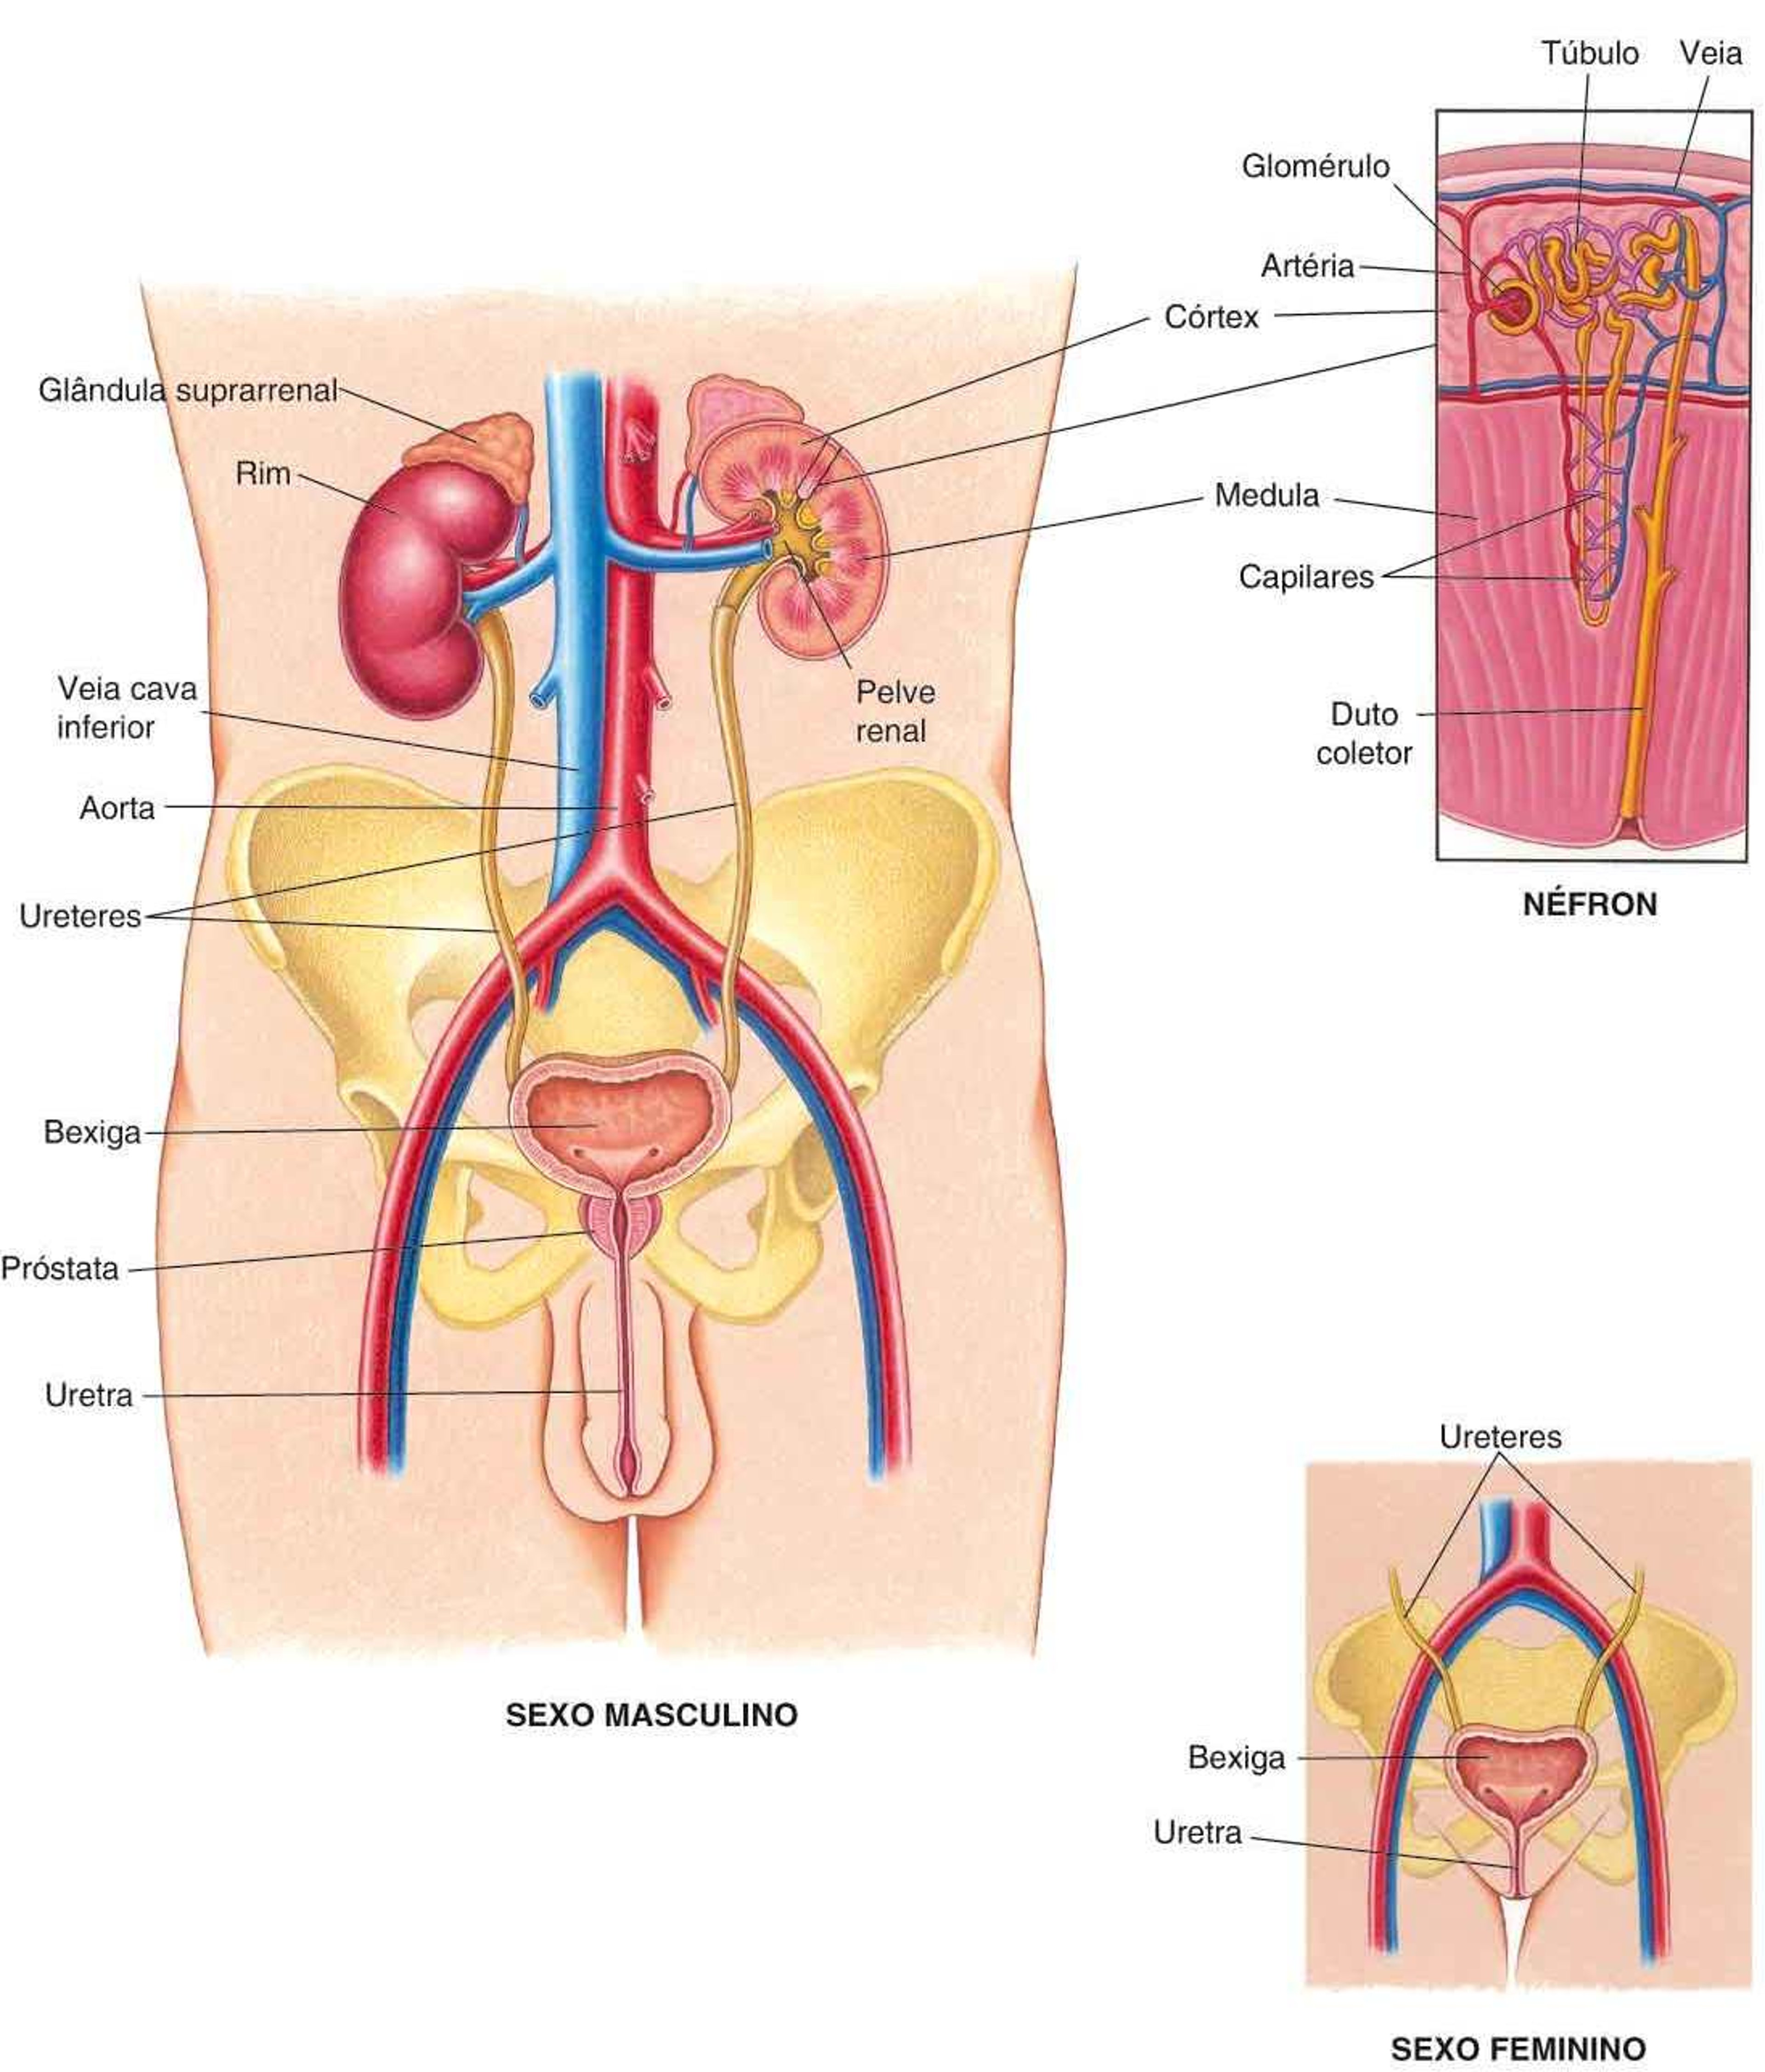 Visualização do sistema urinário